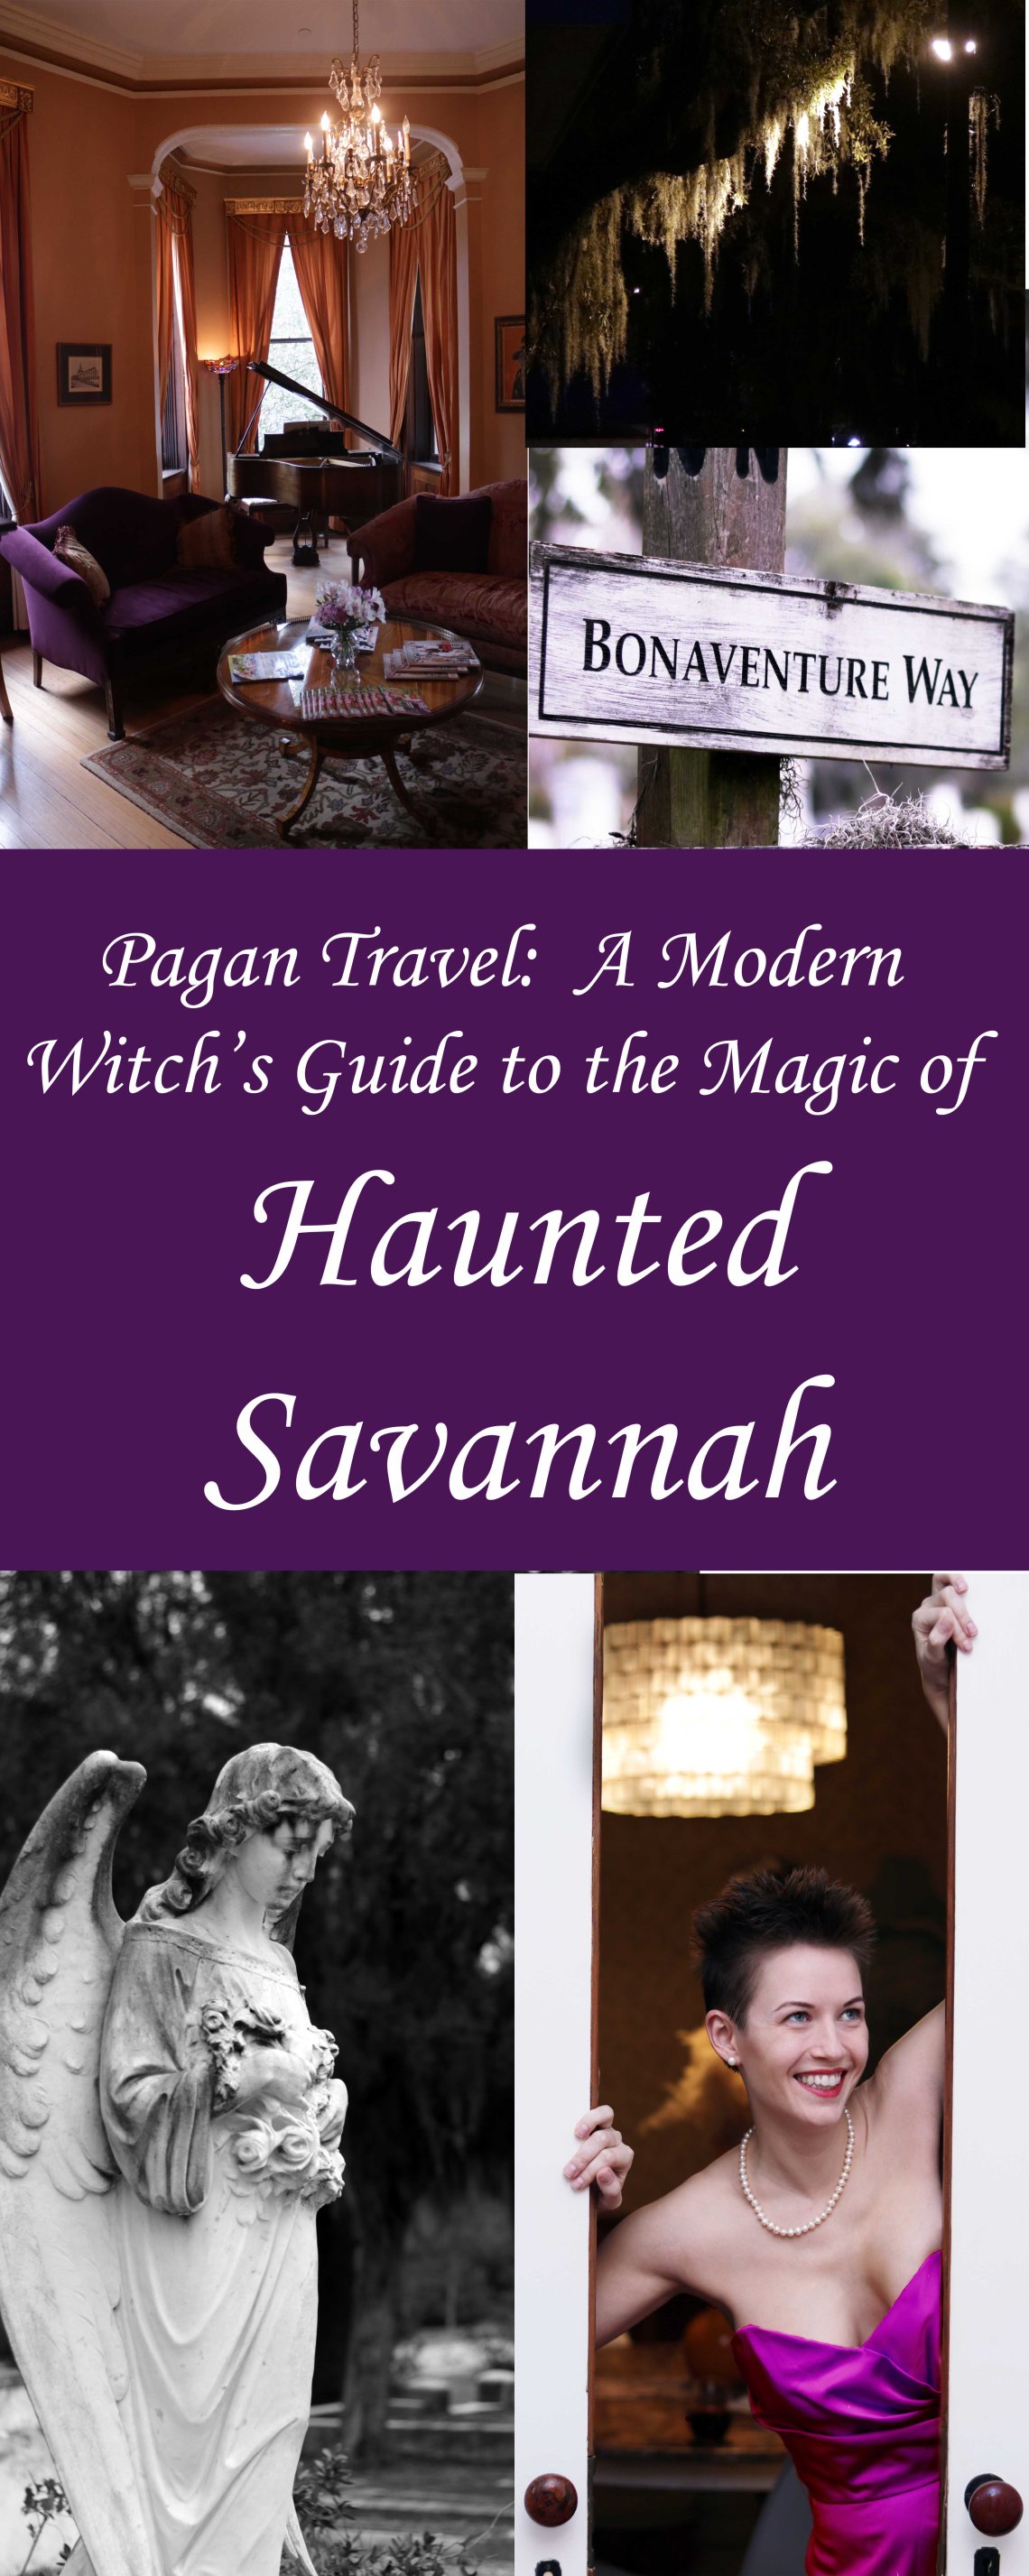 Viajes paganos: la guía de la bruja moderna para la sabana embrujada